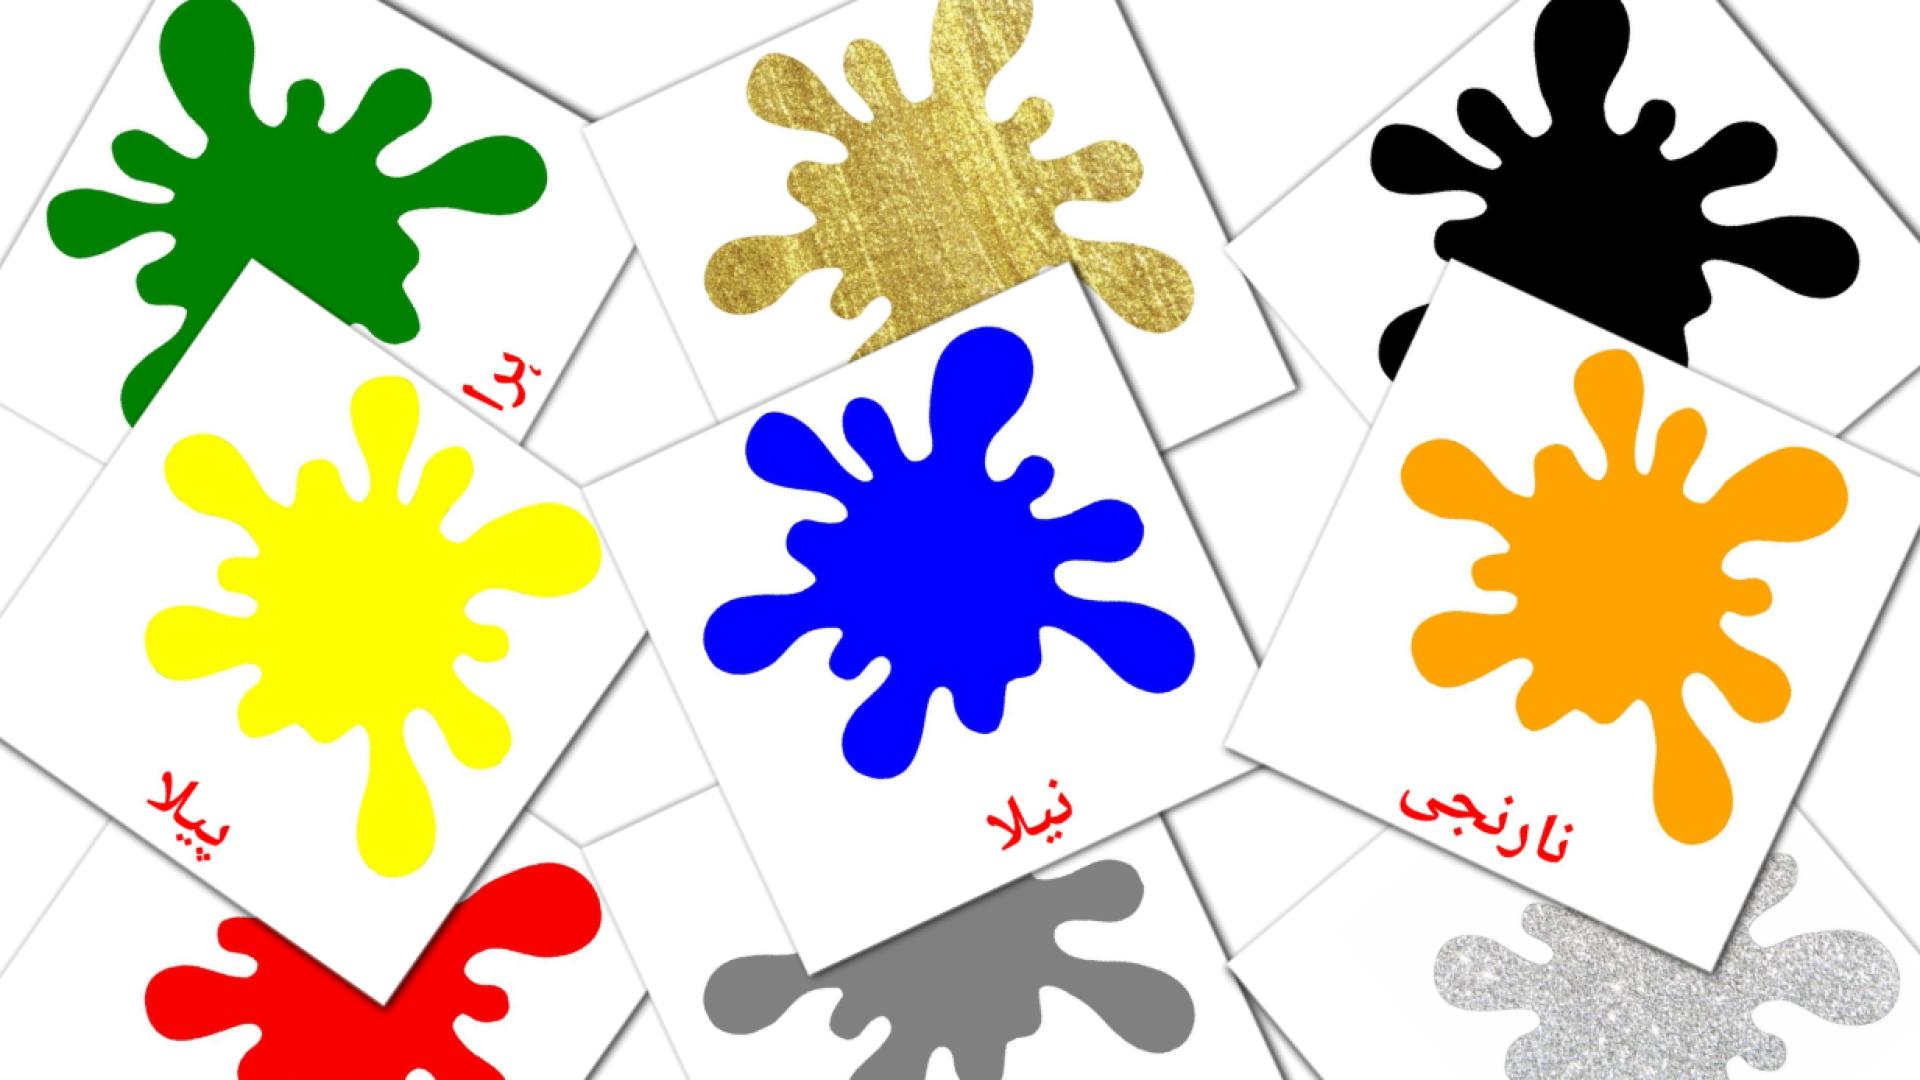 urdu tarjetas de vocabulario en رنگ اور شکلیں۔